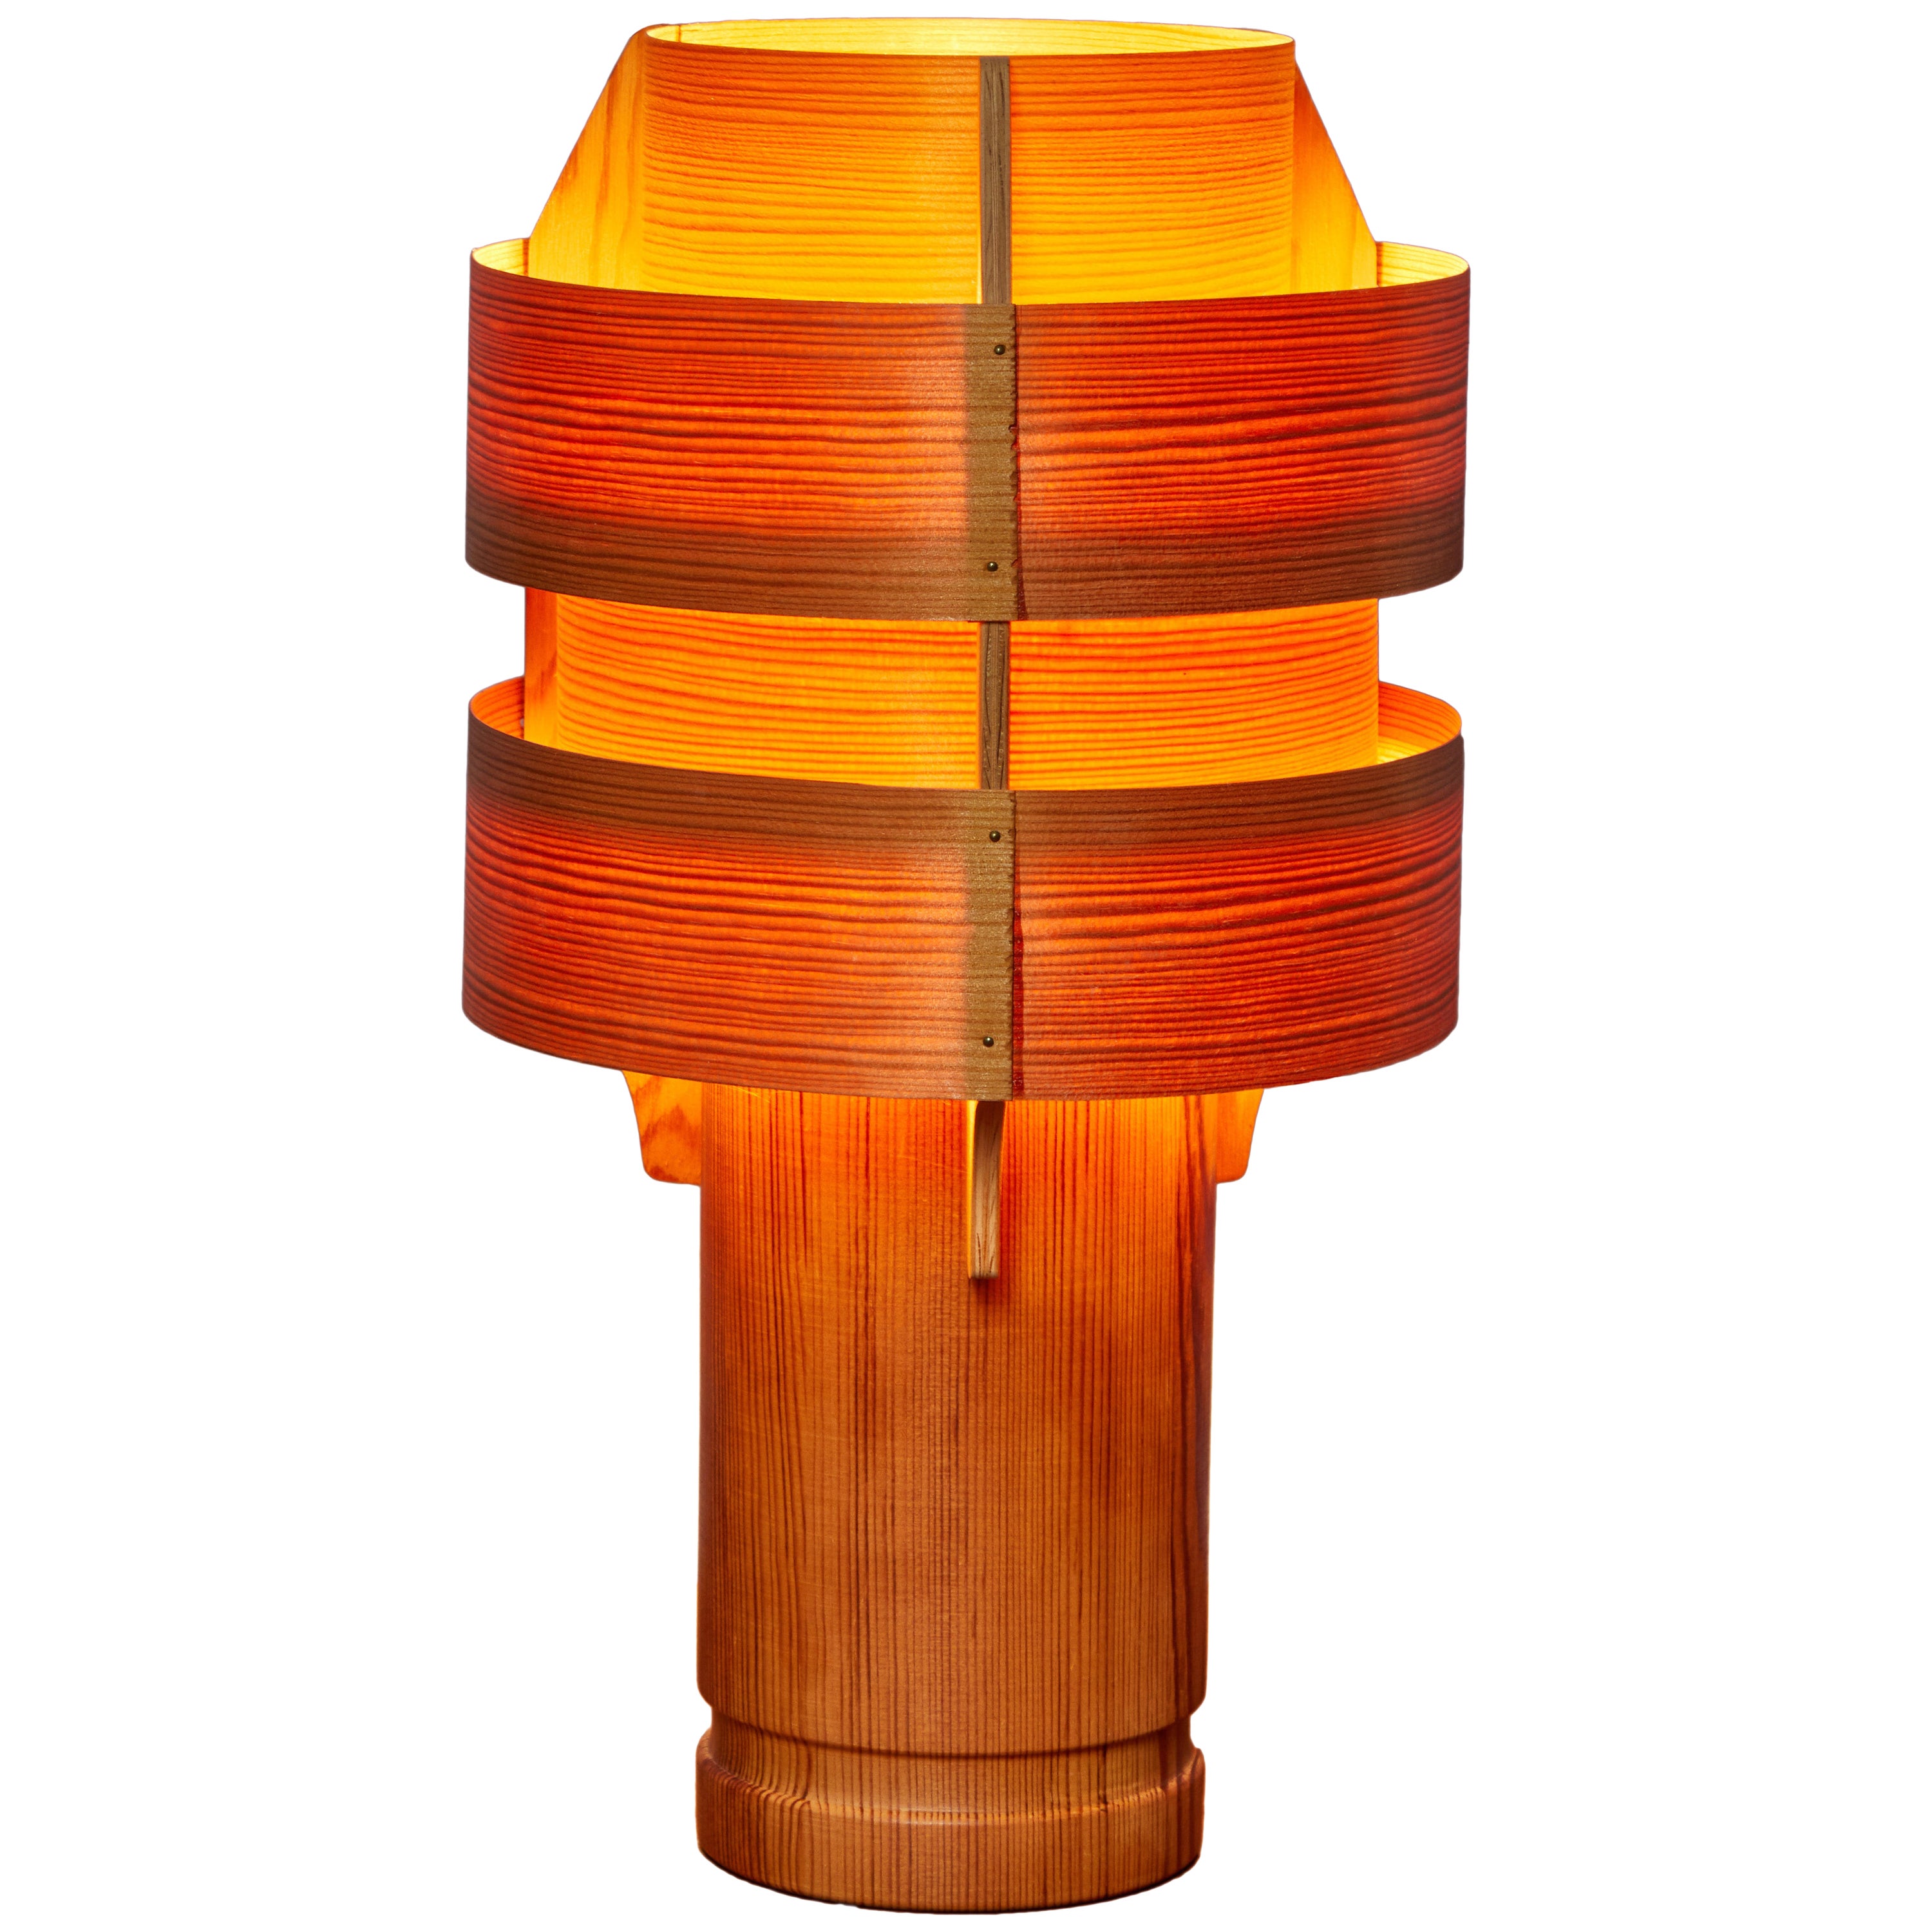 Rare 1960s Hans-Agne Jakobsson Model 243 Wood Table Lamp for AB Ellysett